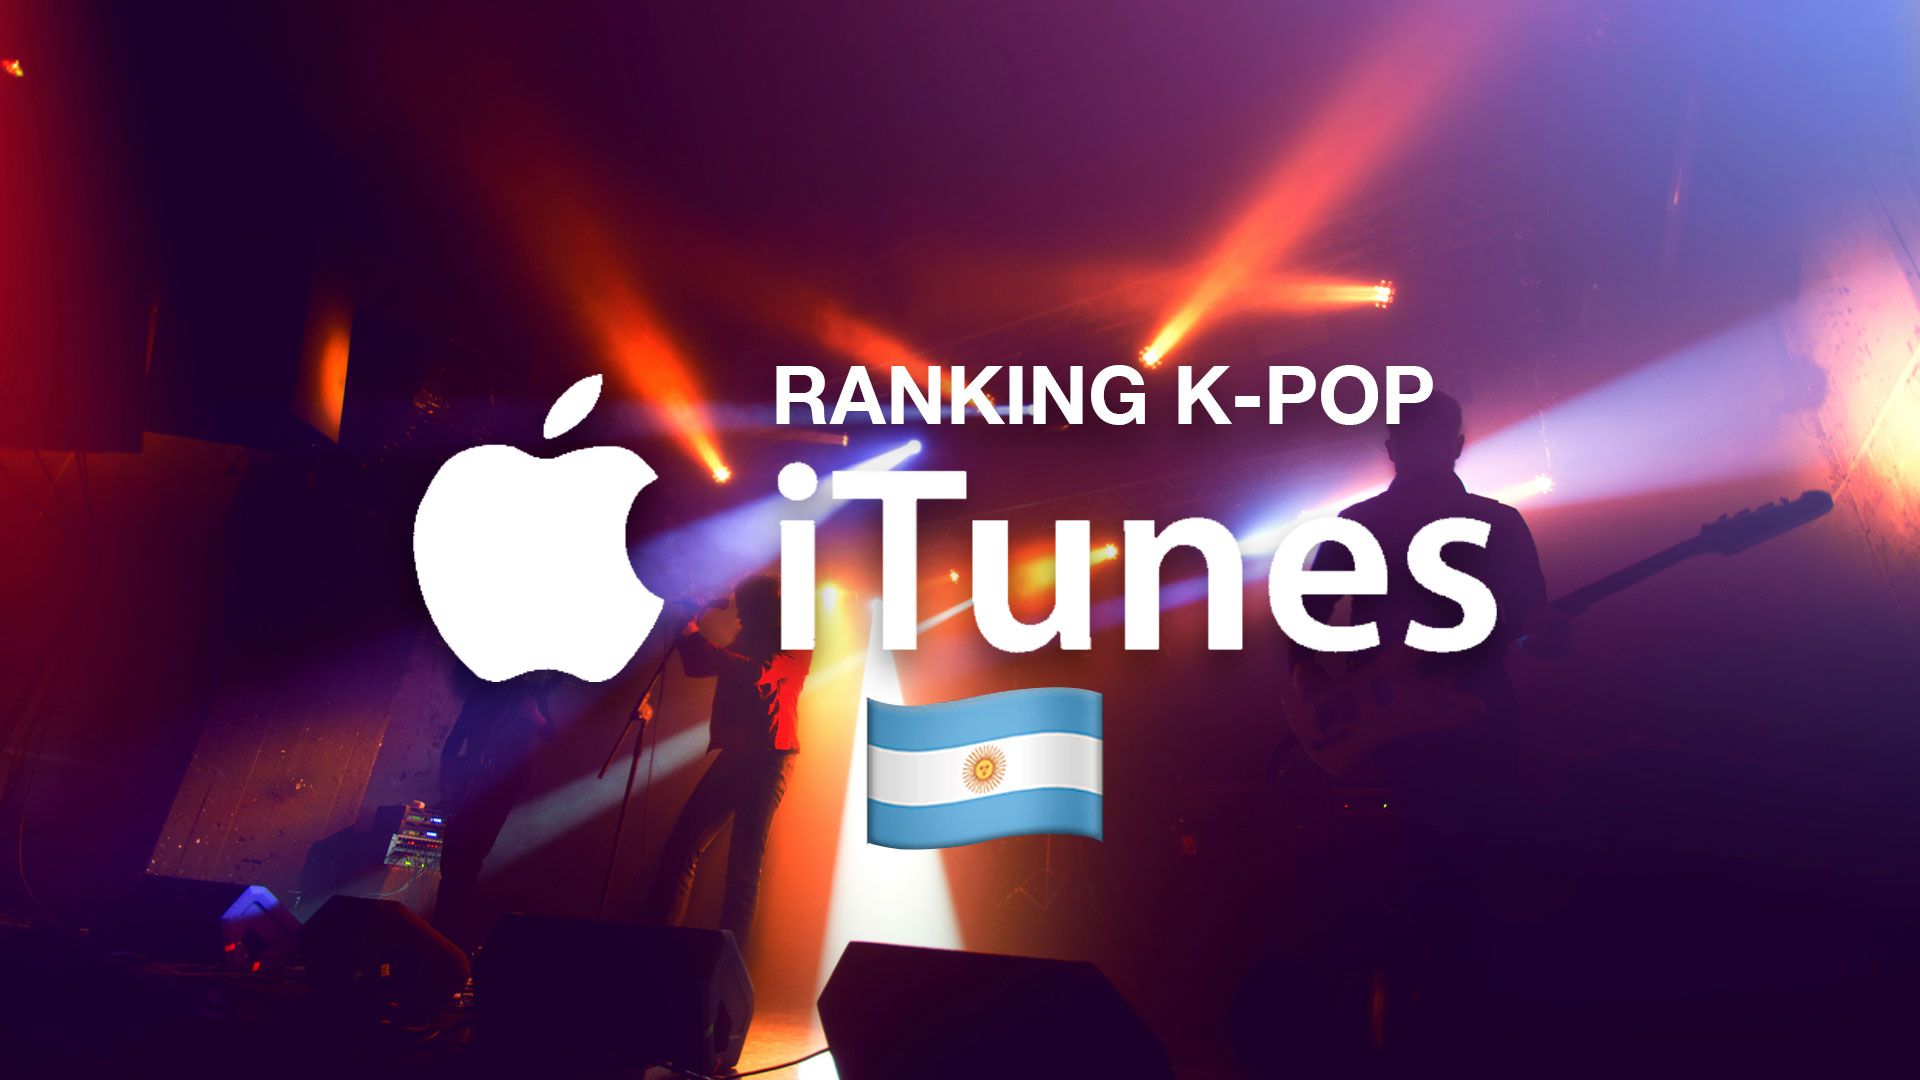 Estos son los artistas más escuchados hoy en el top de K-pop de iTunes Argentina